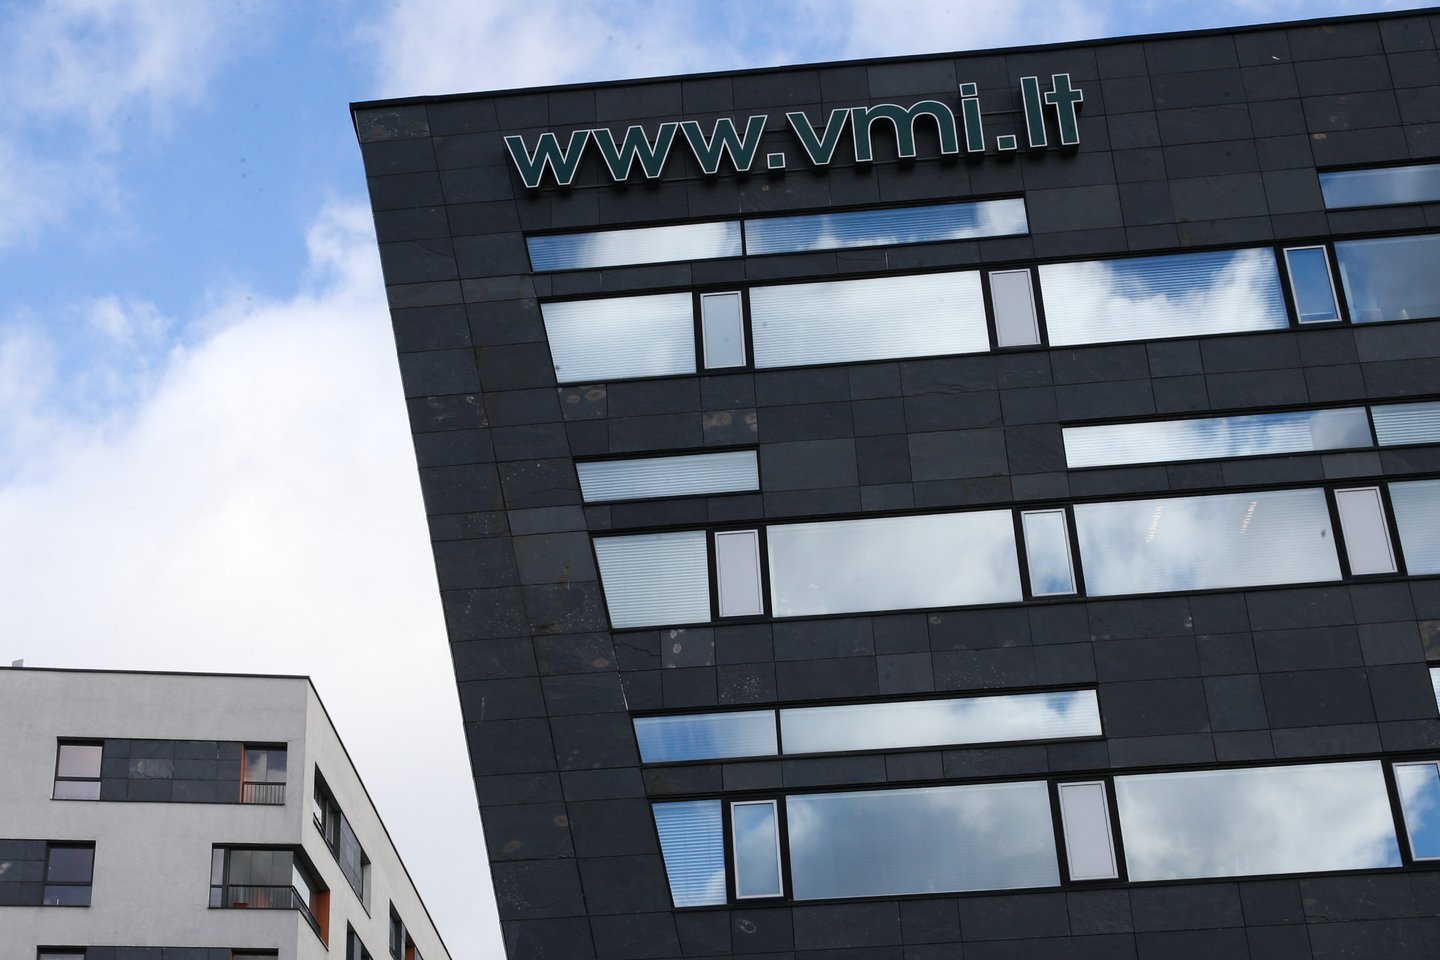  Valstybinei mokesčių inspekcijai (VMI) dėl asmens duomenų apsaugos pažeidimų gresia bauda iki 60 tūkst. eurų, skelbia portalas „Verslo žinios”. <br>R.Danisevičiaus nuotr.